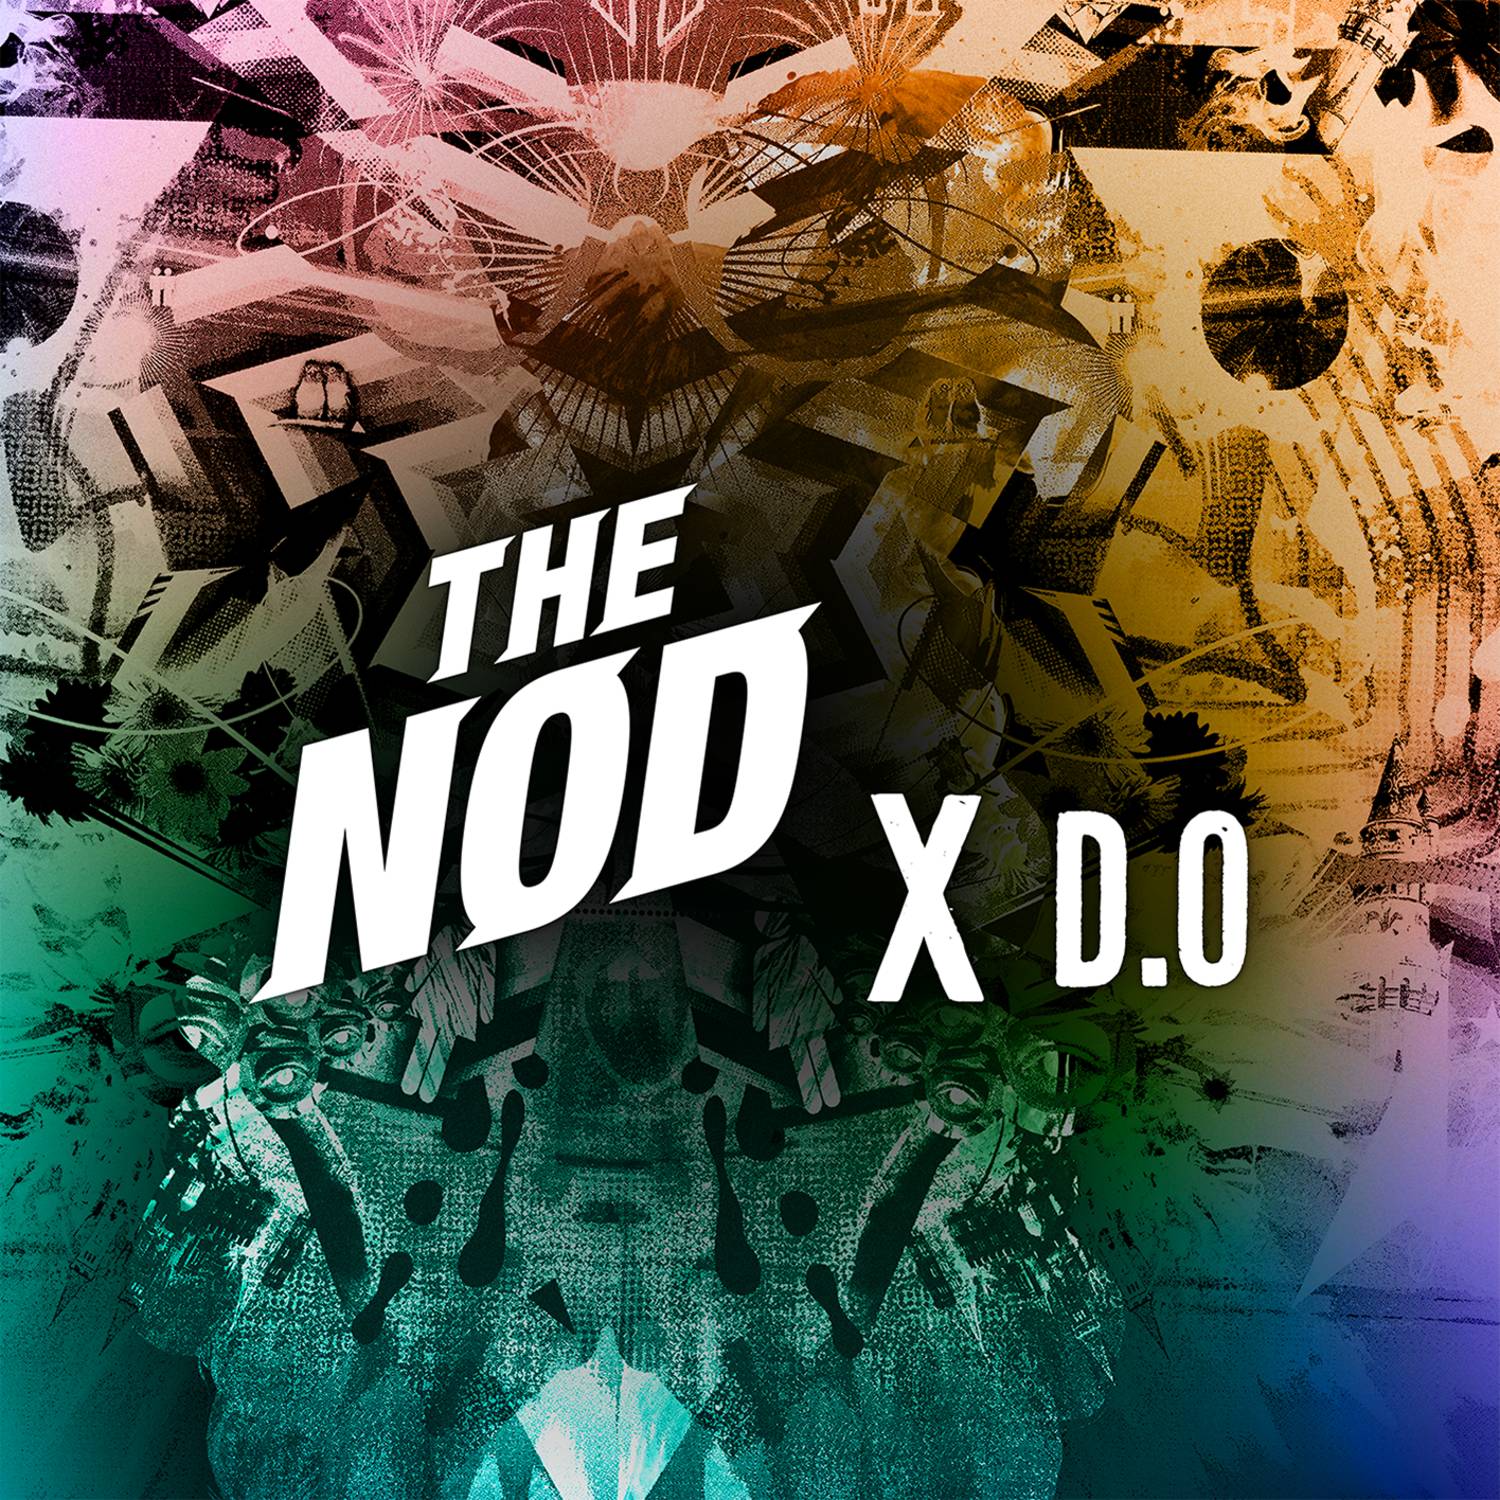 The Nod X D.O